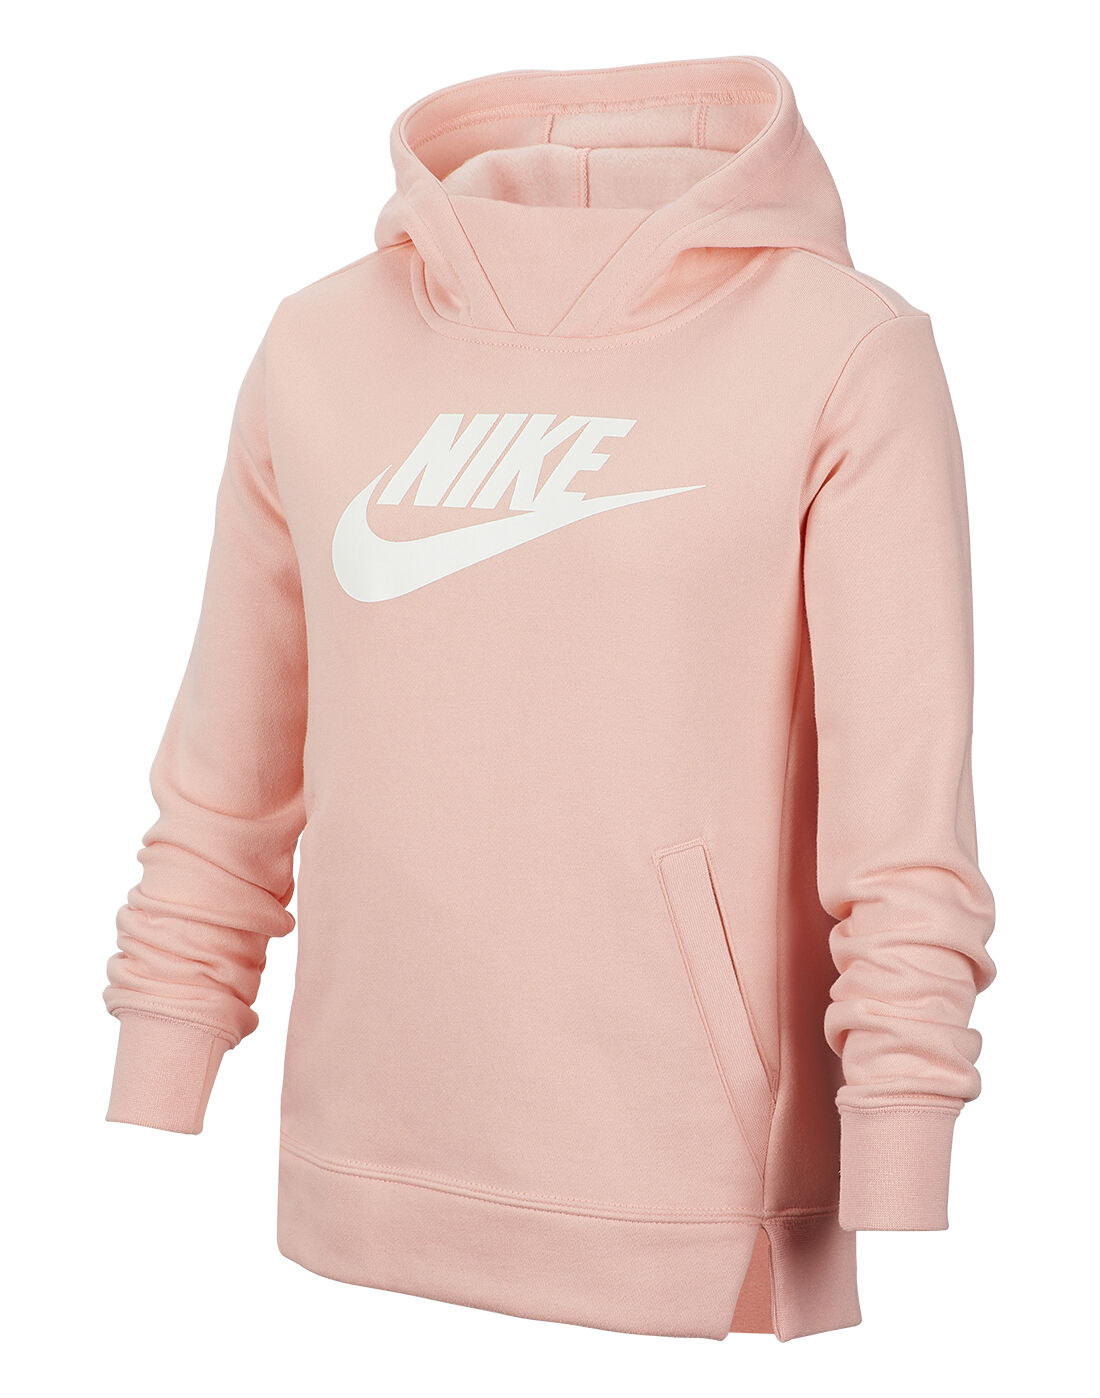 Nike Older Girls Pullover Hoodie - Pink 